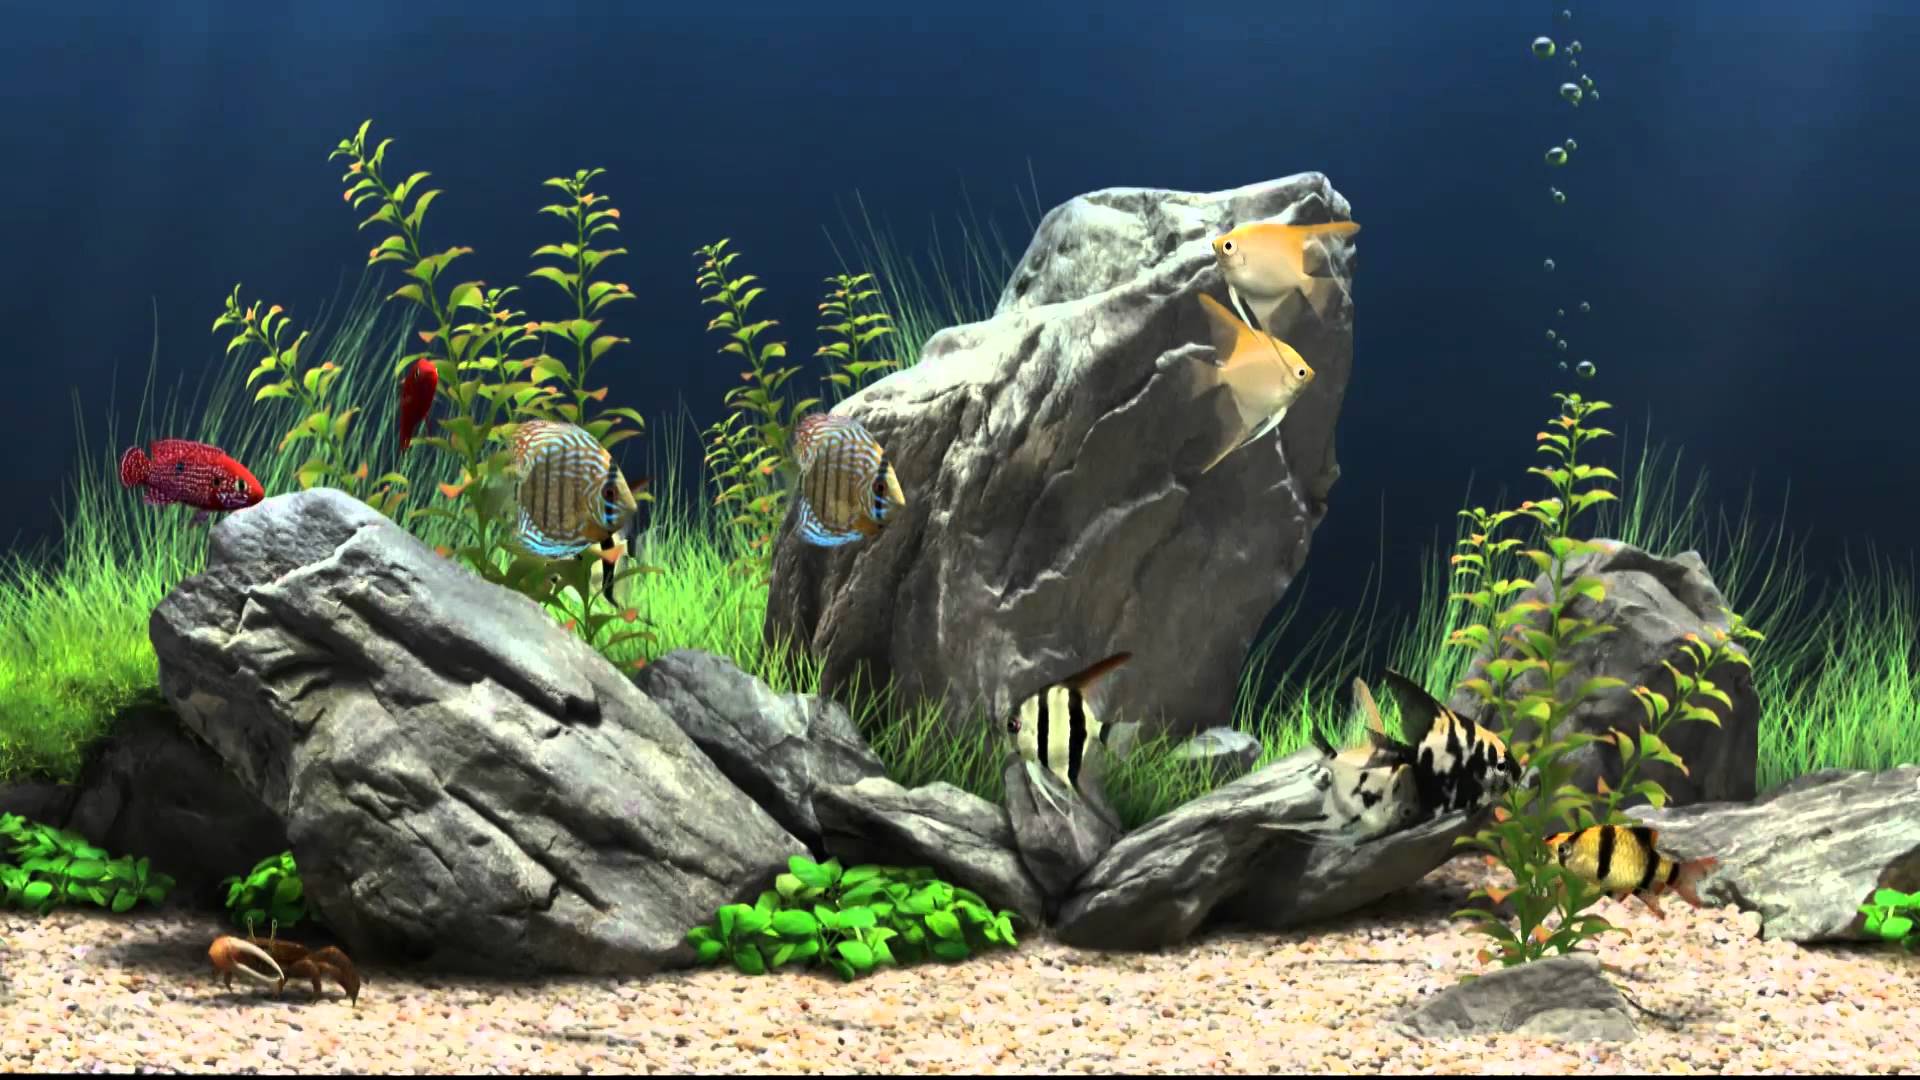 Mở rộng không gian màn hình của bạn với hình nền bể cá miễn phí đầy màu sắc và sinh động. Biến máy tính của bạn trở nên sống động hơn bao giờ hết với hình nền hoàn toàn miễn phí này. Hãy tải về ngay để thưởng thức vẻ đẹp tự nhiên của bể cá từ trong căn phòng của bạn.